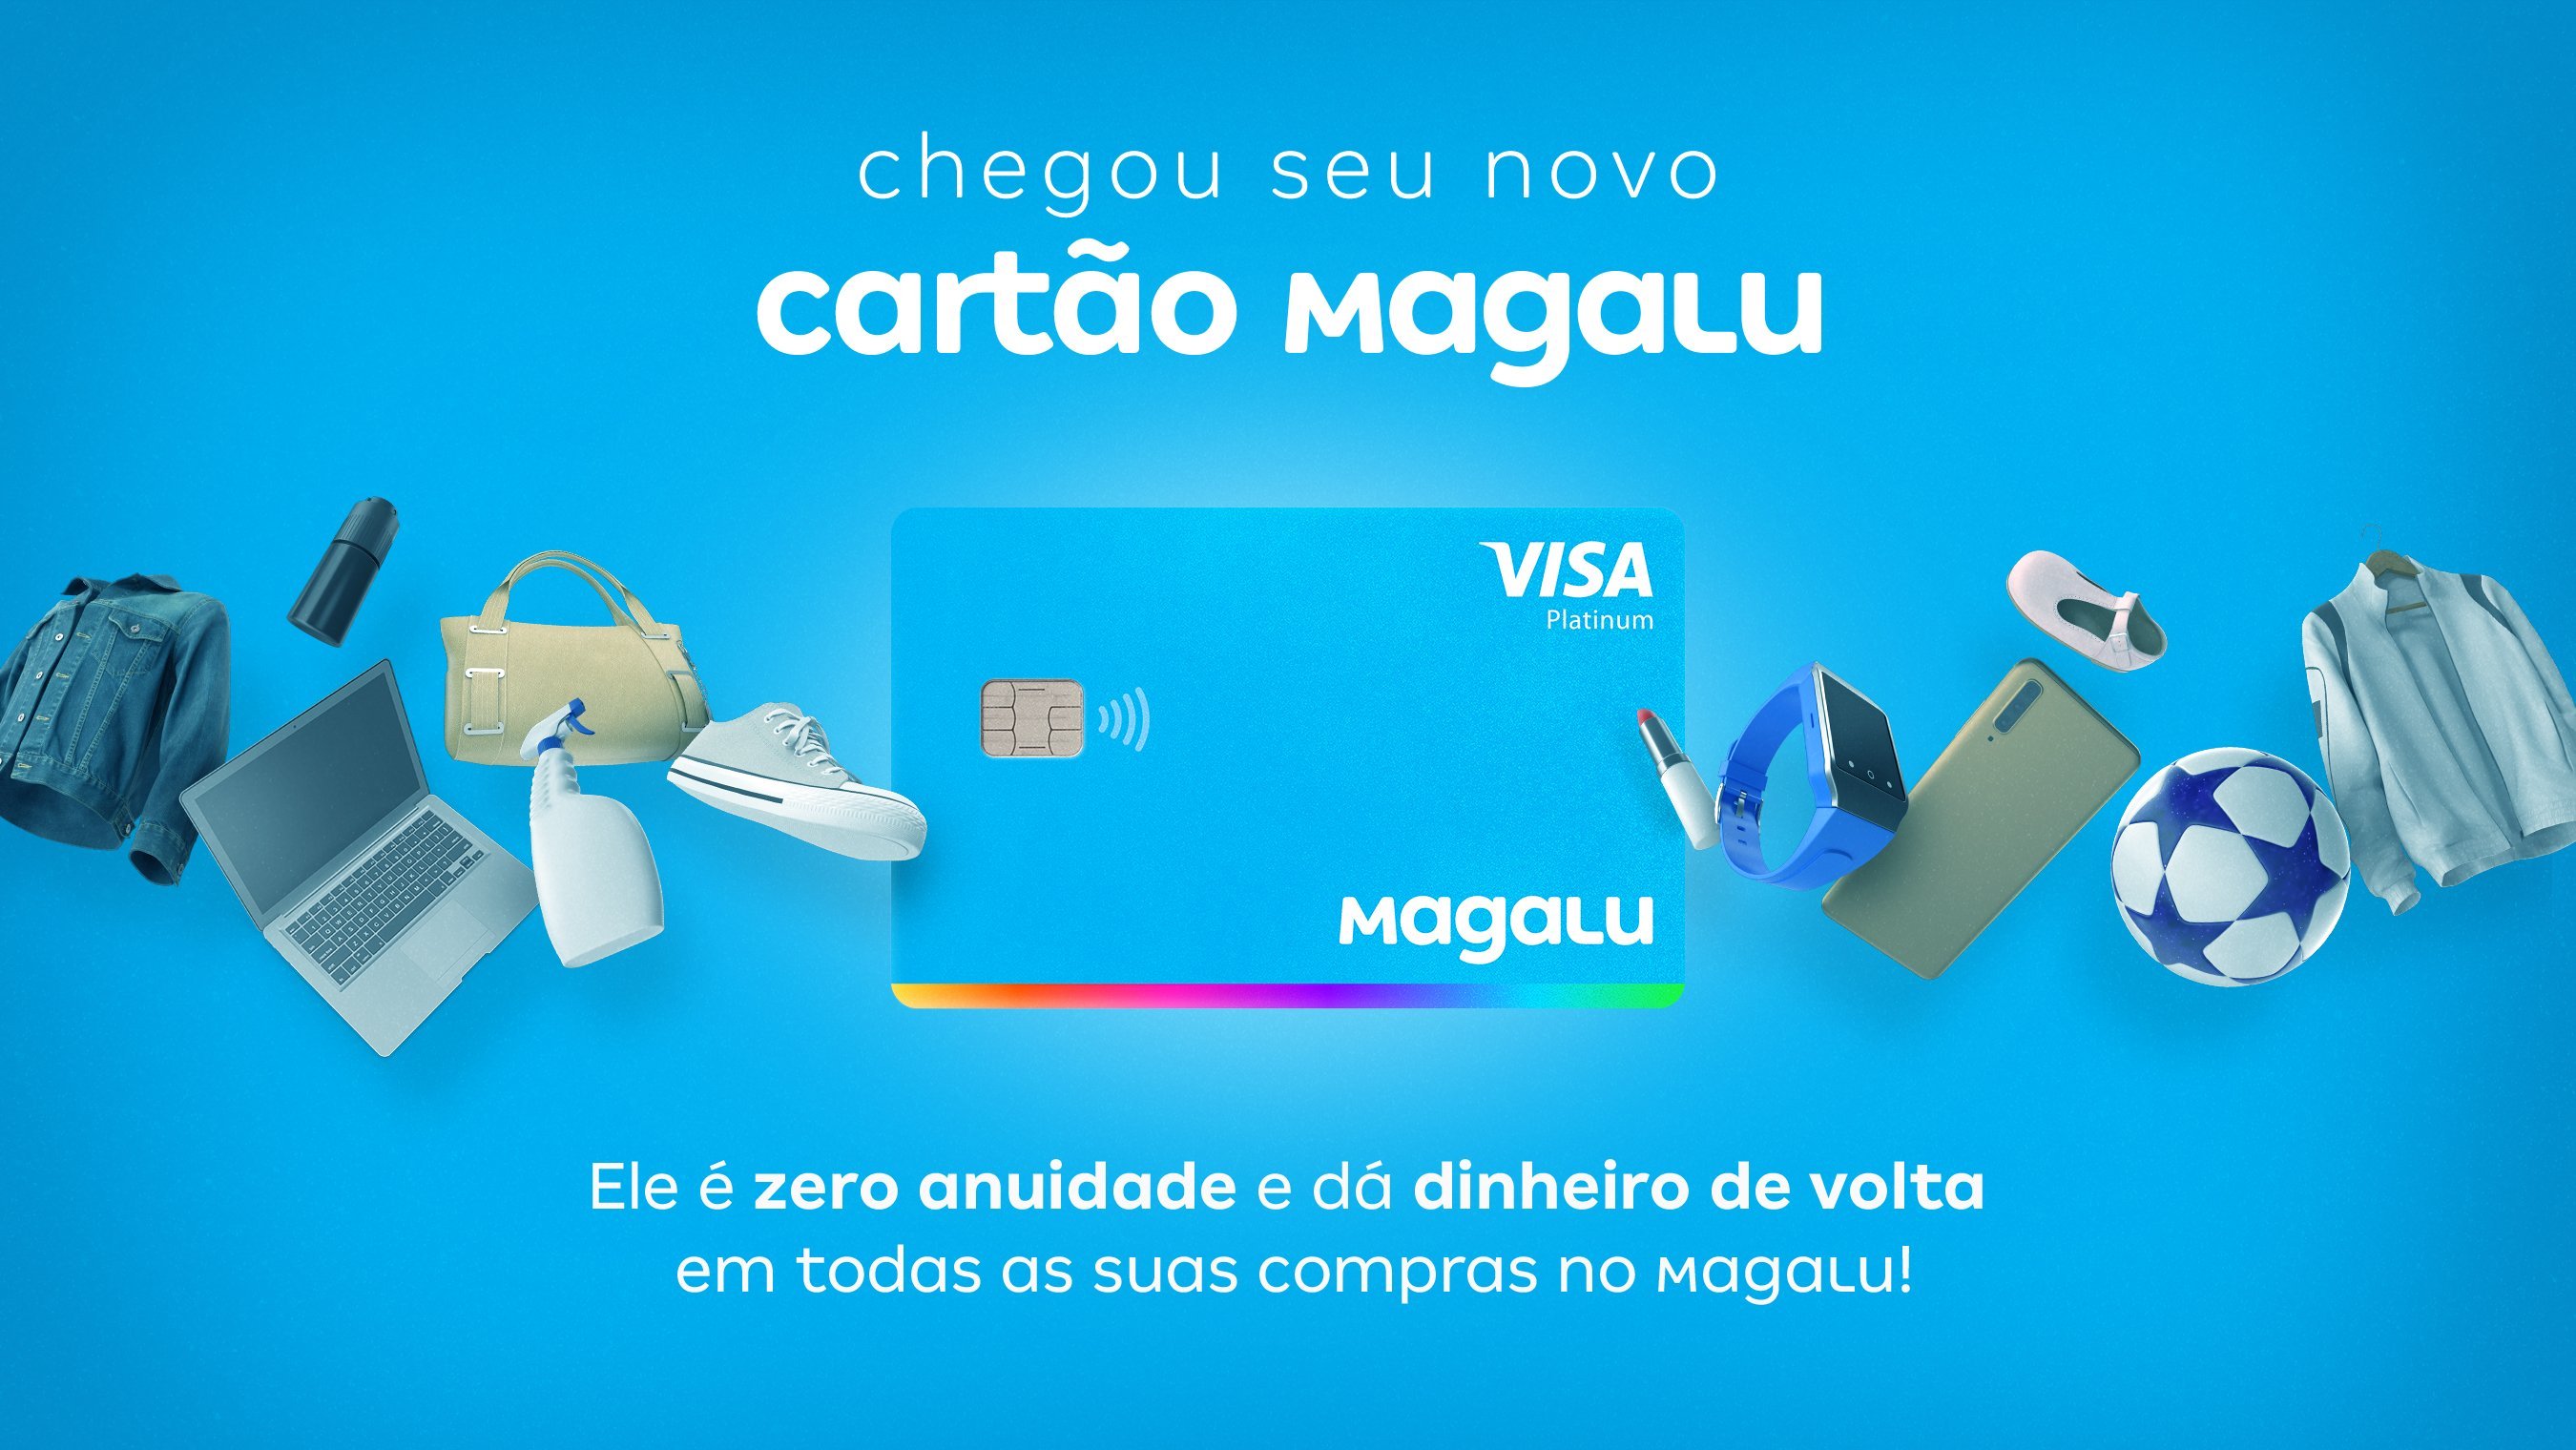 Afinal, o cartão Magalu oferece cashback e grandes parcelamentos. Fonte: Magalu.